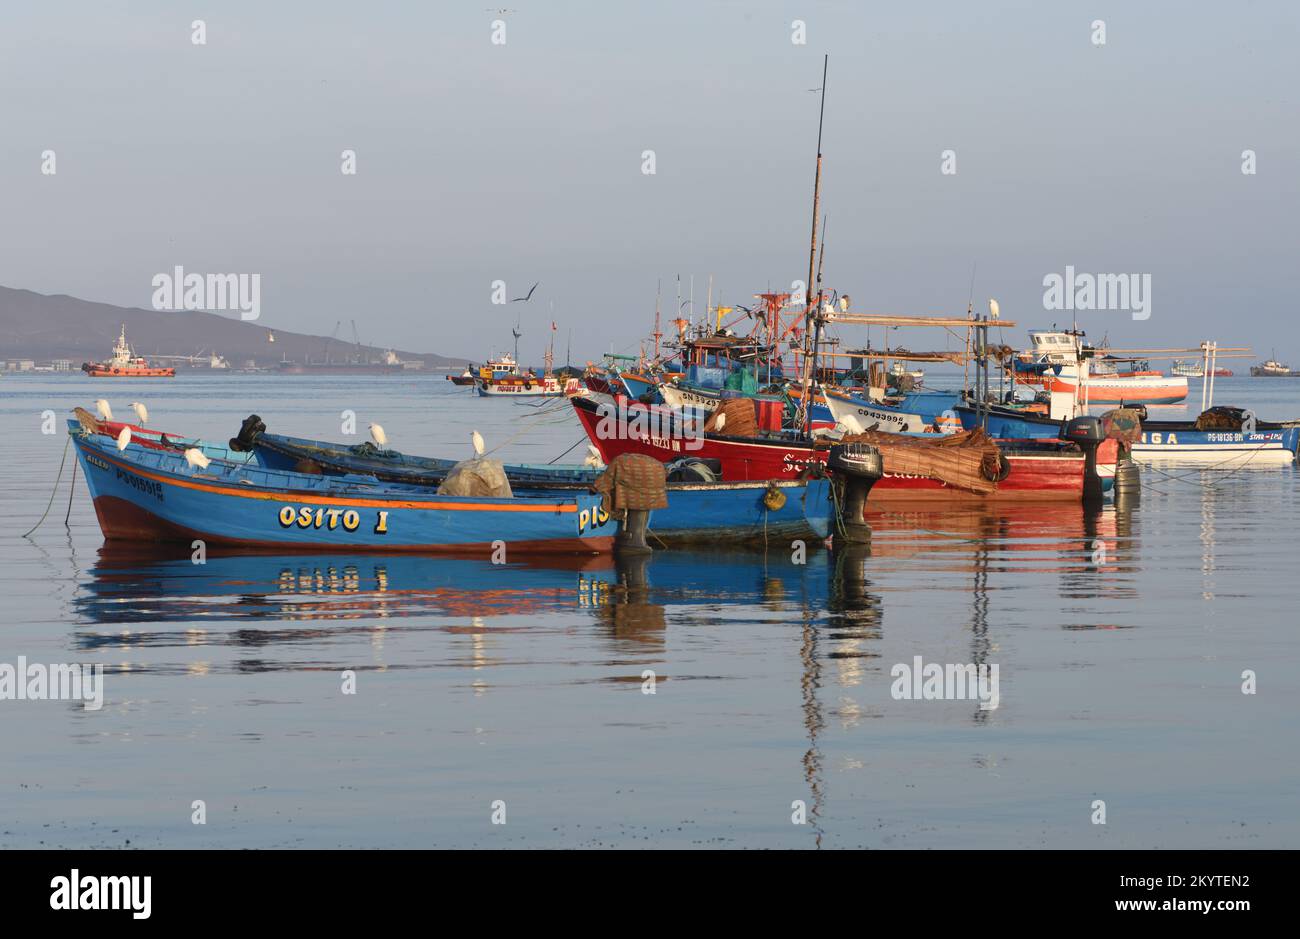 Bateaux de pêche ancrés dans la baie de Paracas. La côte du désert est en arrière-plan. Paracas, ICA, Pérou. Banque D'Images